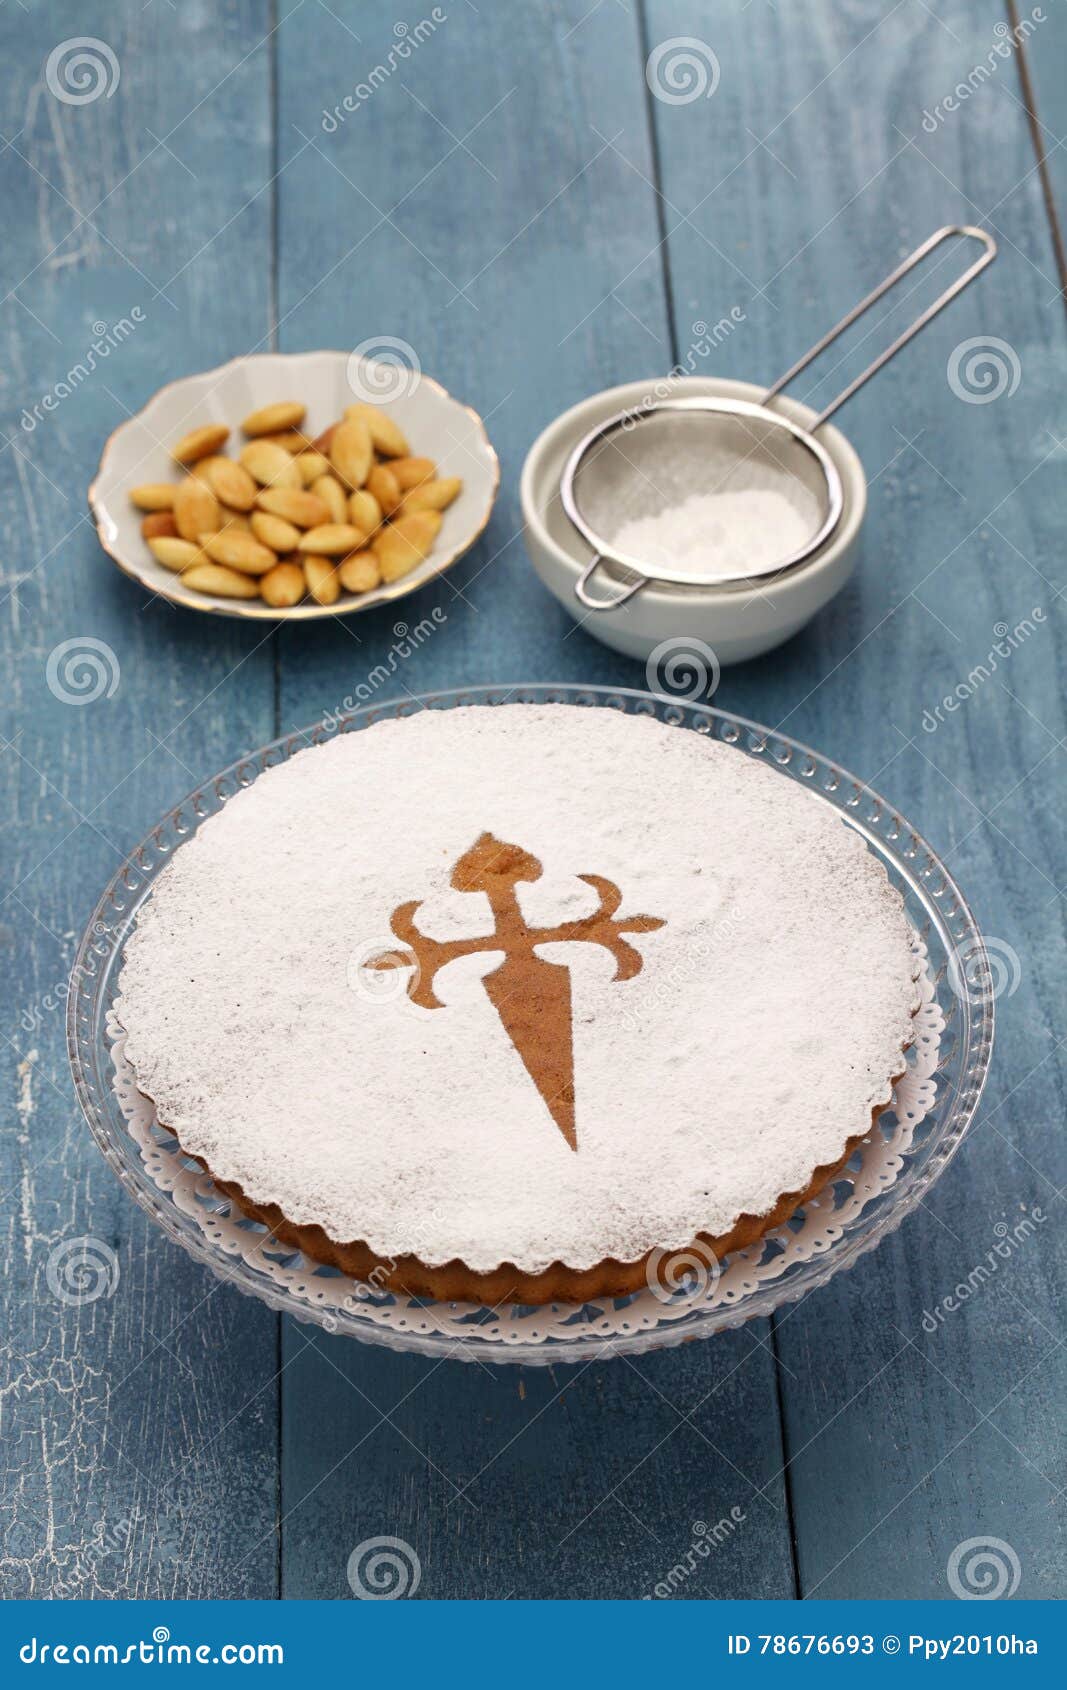 tarta de santiago, spanish almond cake